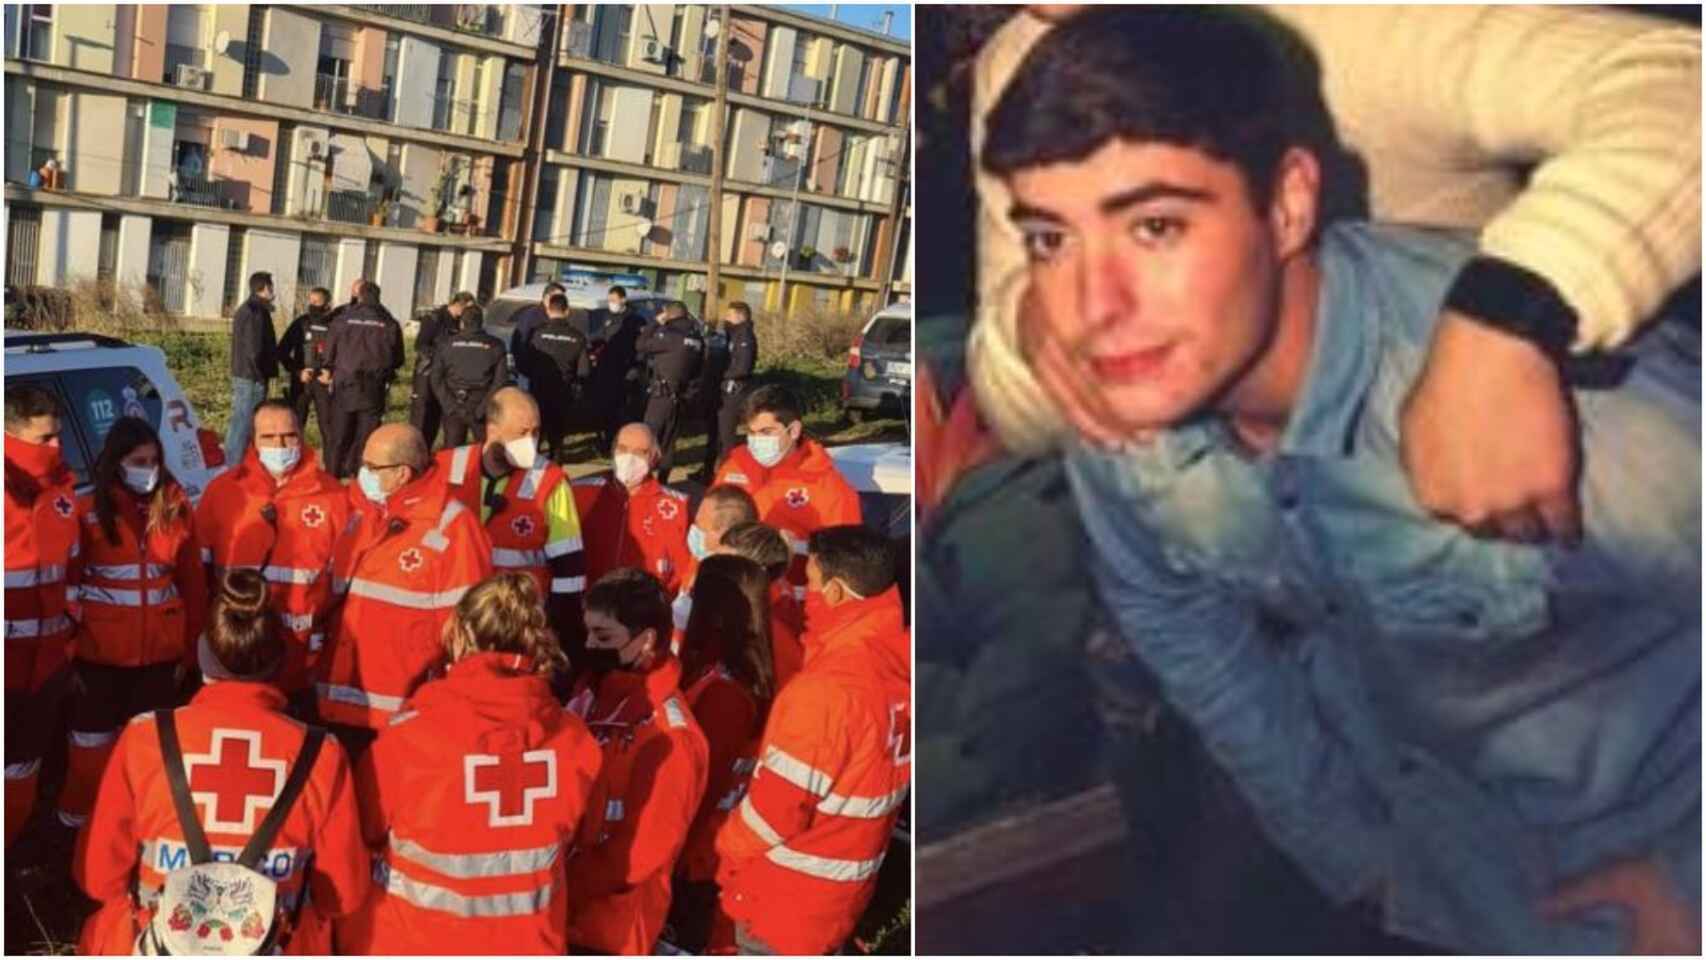 A la derecha, una imagen de Pablo Sierra, el joven de 21 años que desapareció el pasado jueves en Badajoz.